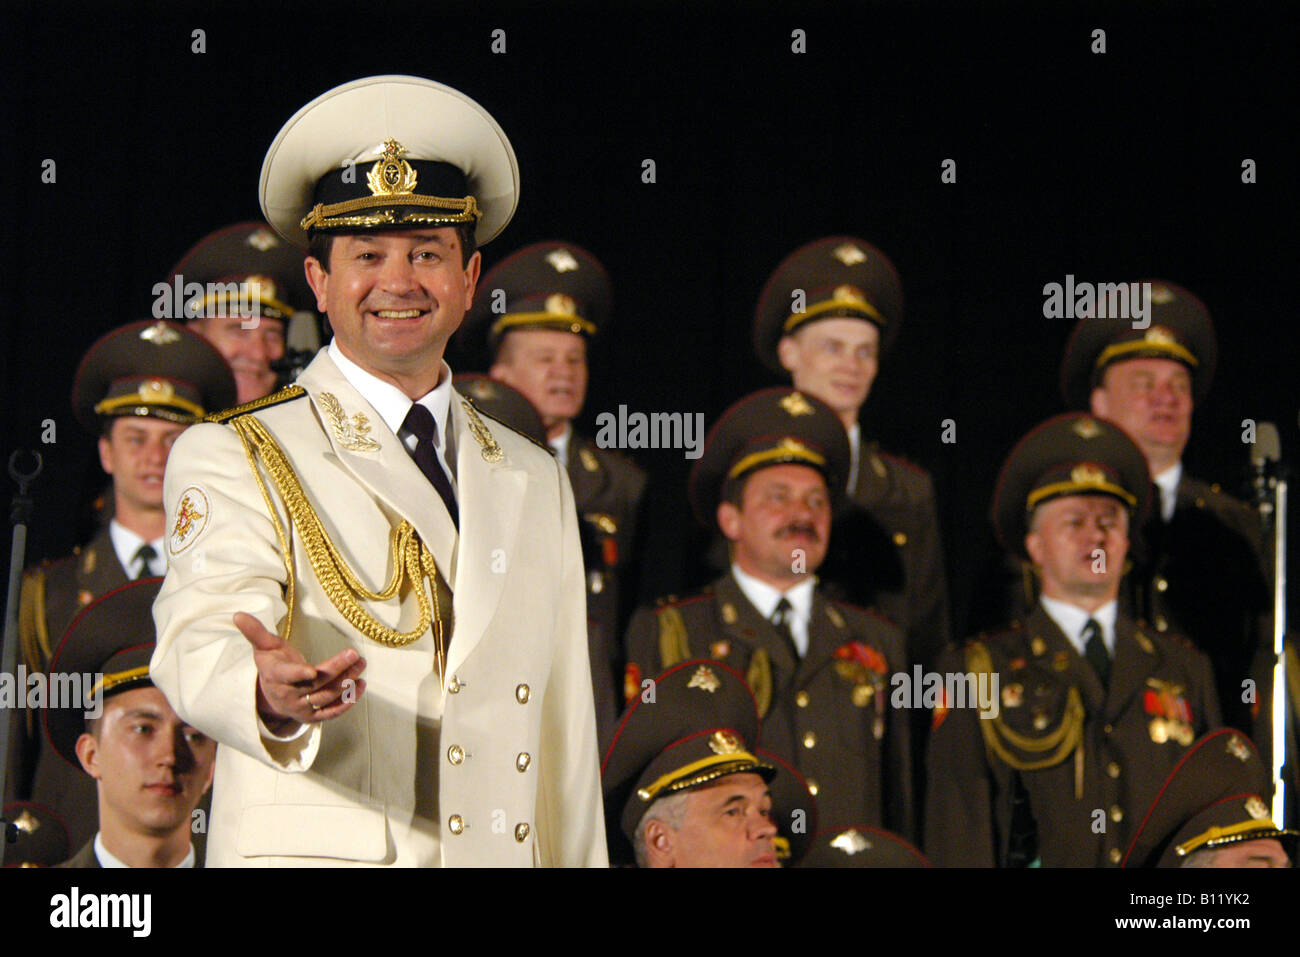 Die Alexandrov Red Army Choir. Stockfoto